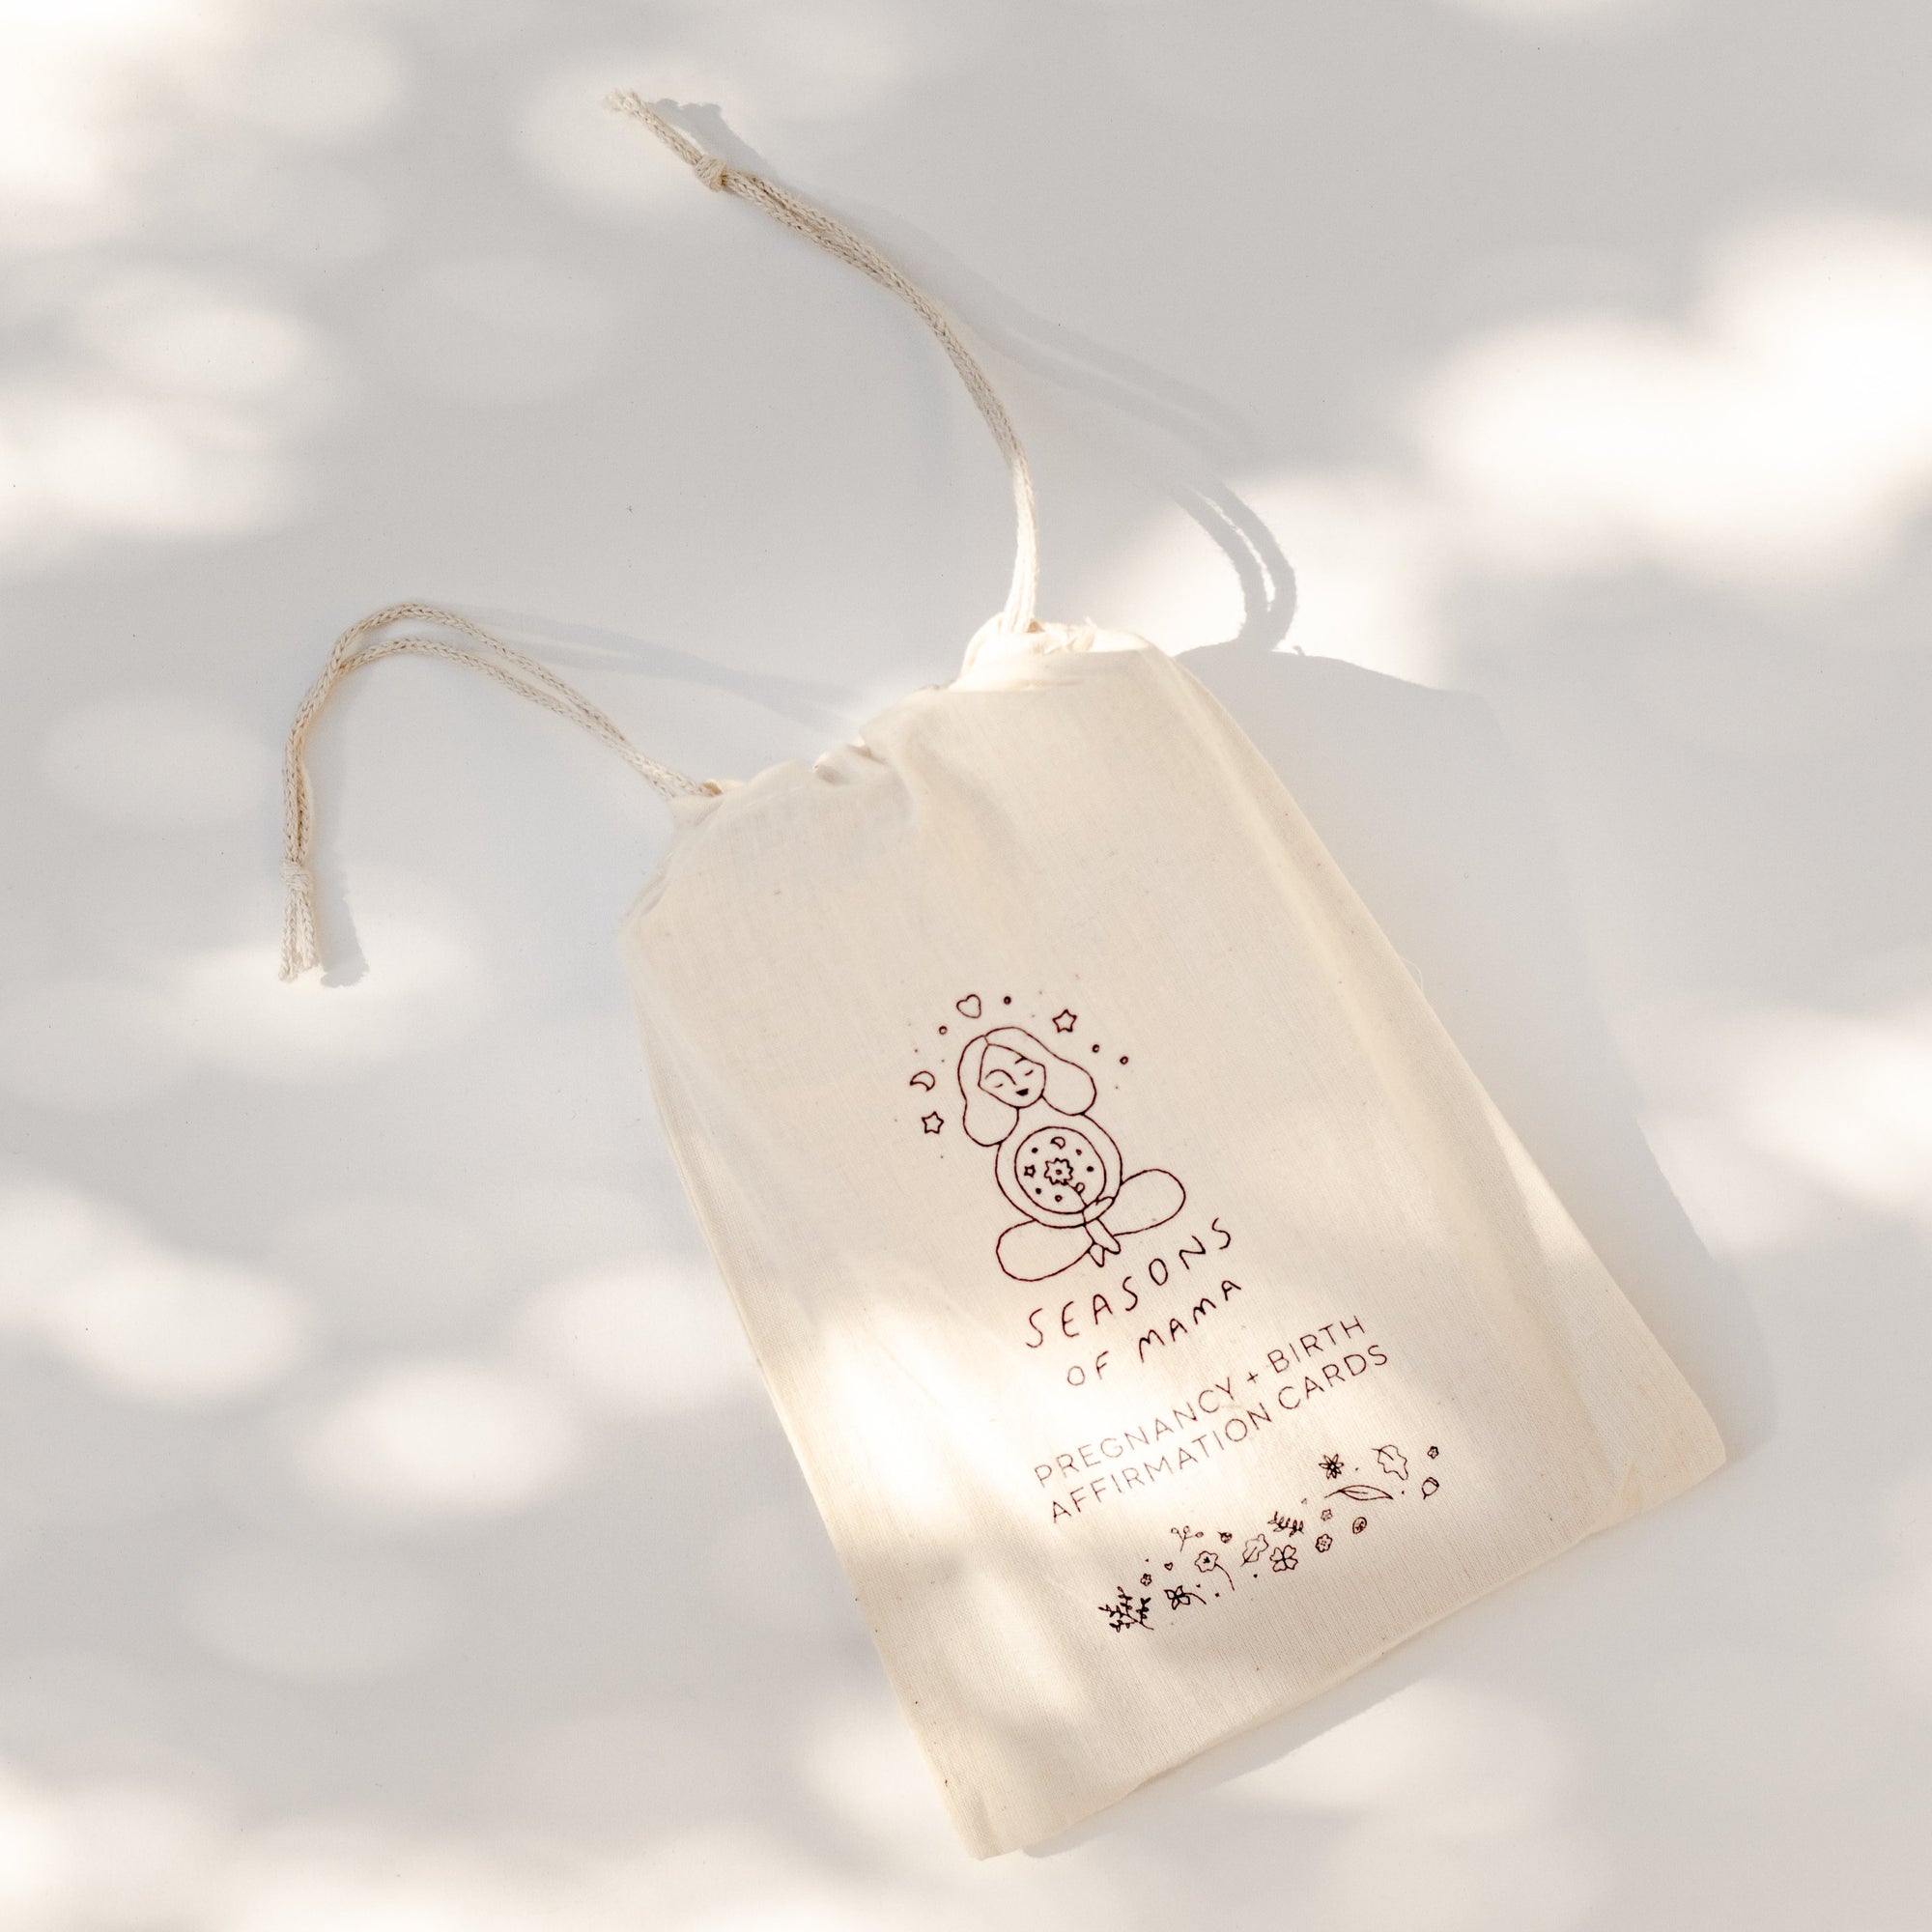 A Seasons of Mama branded calico bag.